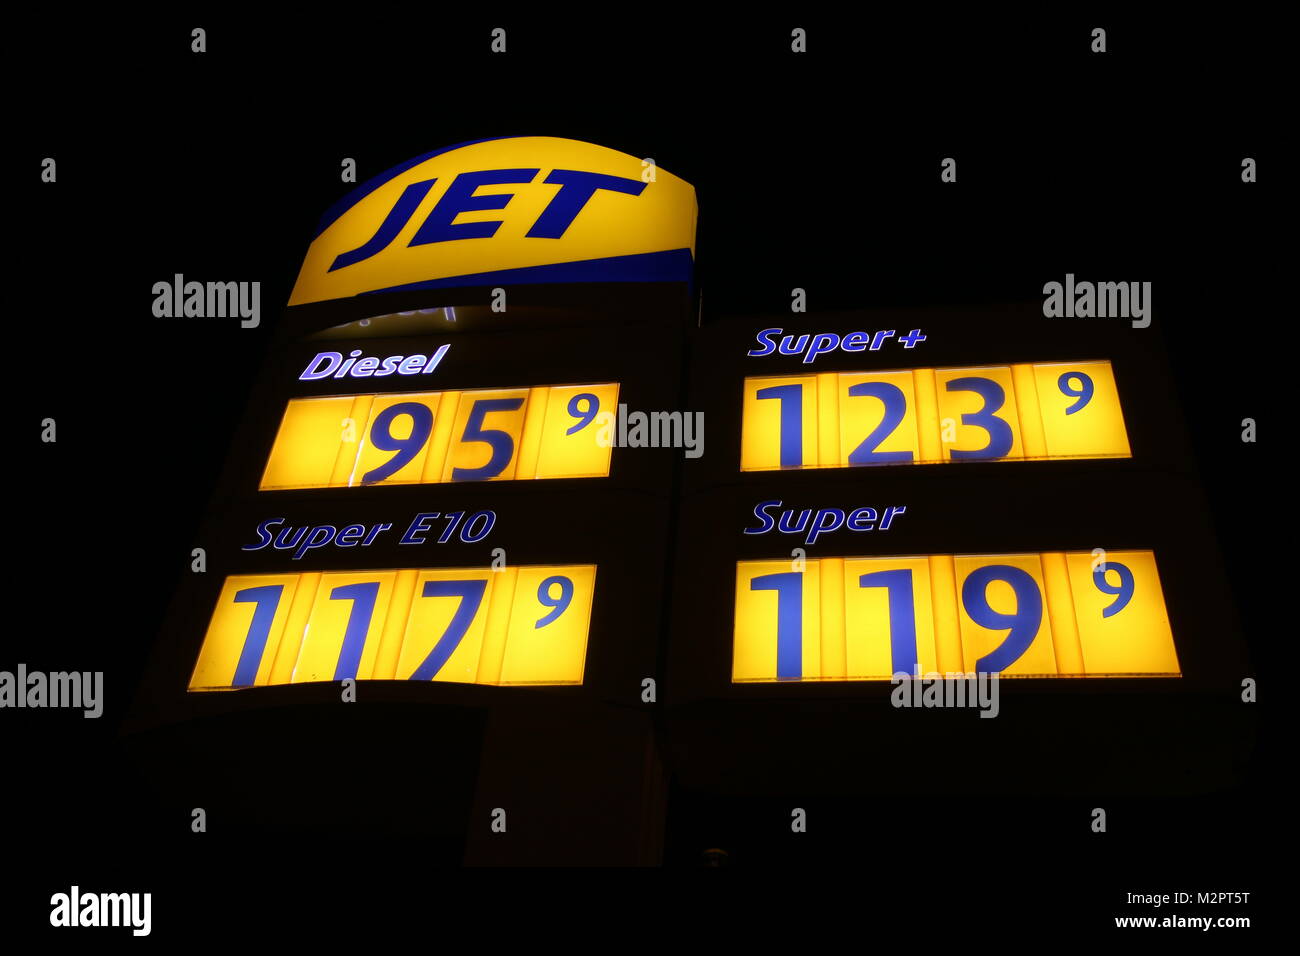 Tankstelle mit Preistafel - Spritpreise auf Jahrestief.  Die Autofahrer dürfen sich freuen, auch zum Jahreswechsel lagen die Spritpreise auf einem Jahrestief. Stock Photo